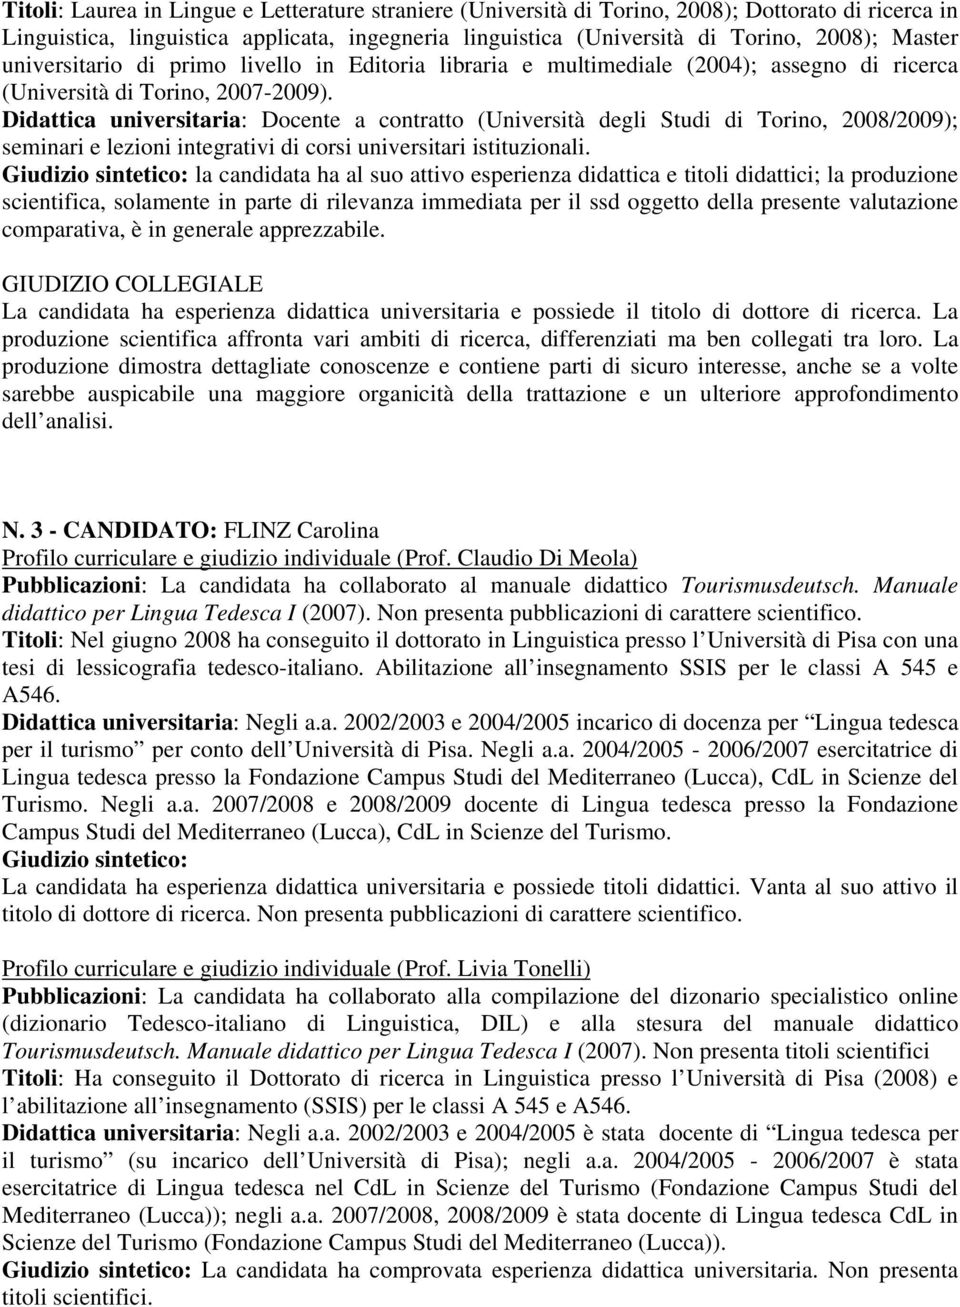 Didattica universitaria: Docente a contratto (Università degli Studi di Torino, 2008/2009); seminari e lezioni integrativi di corsi universitari istituzionali.